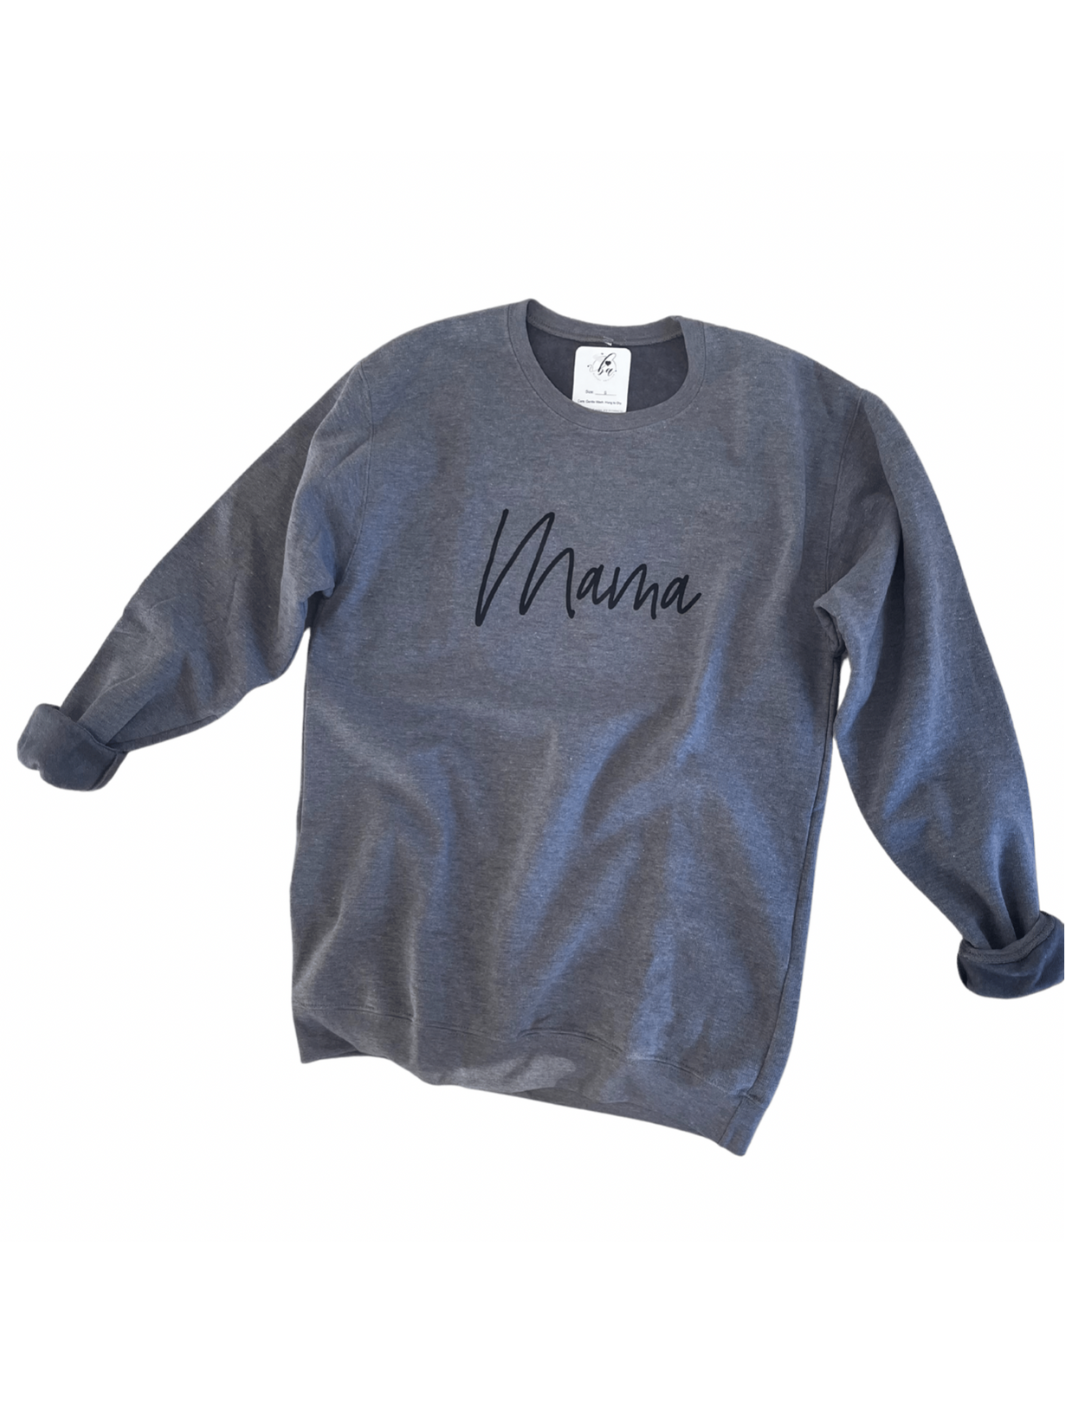 Mama Cozy Crew Neck Sweater (2 left in XS)